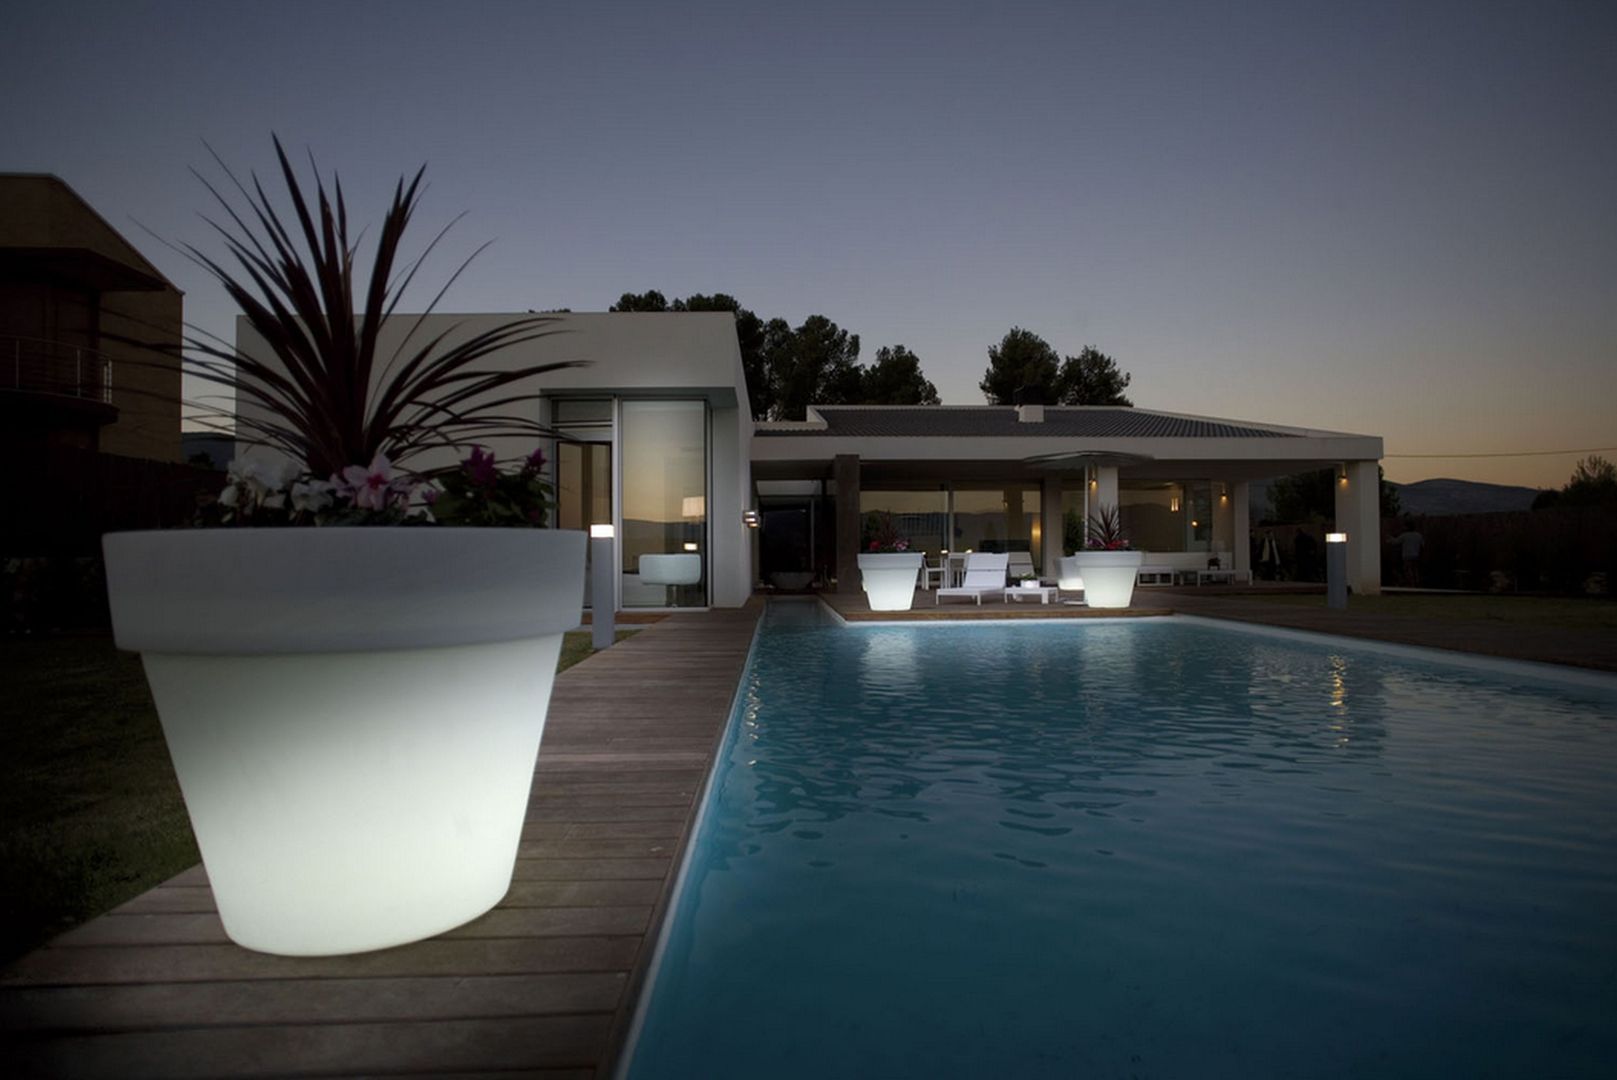 Cuatro formas de iluminar espacios de exterior. , Griscan diseño iluminación Griscan diseño iluminación Pool Pool